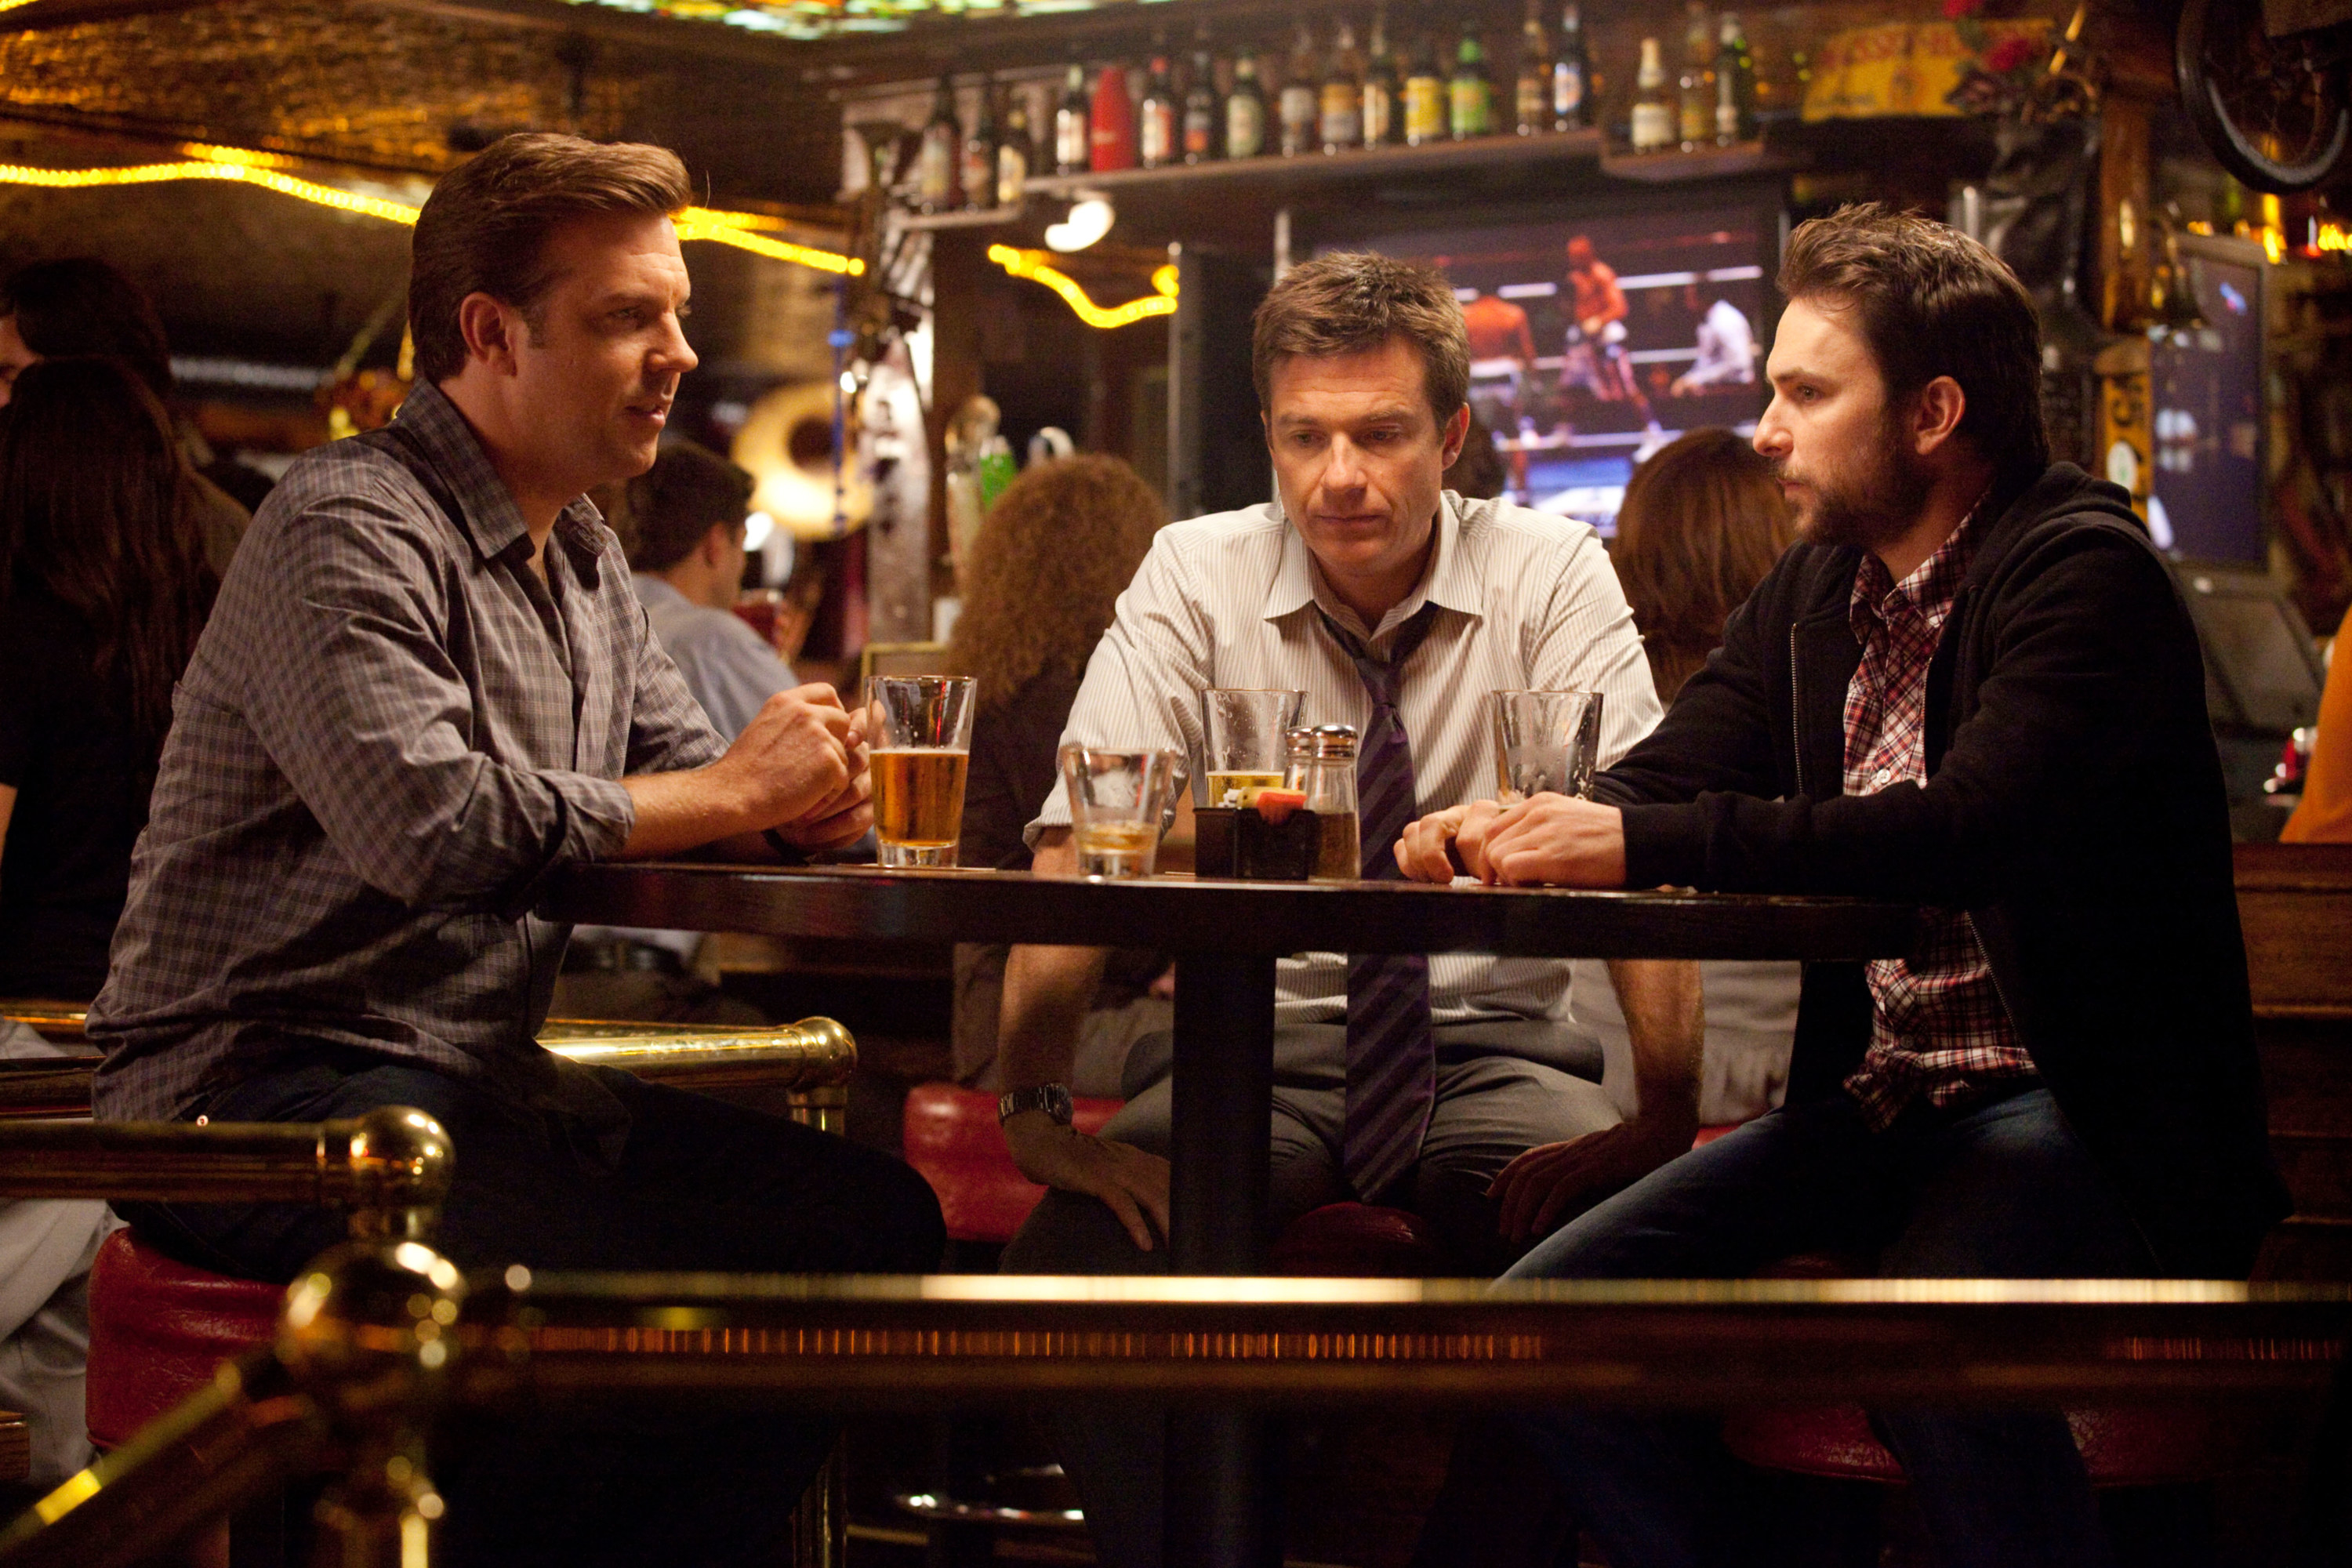 Jason Sudeikis, Jason Bateman, and Charlie Day drinking at a bar